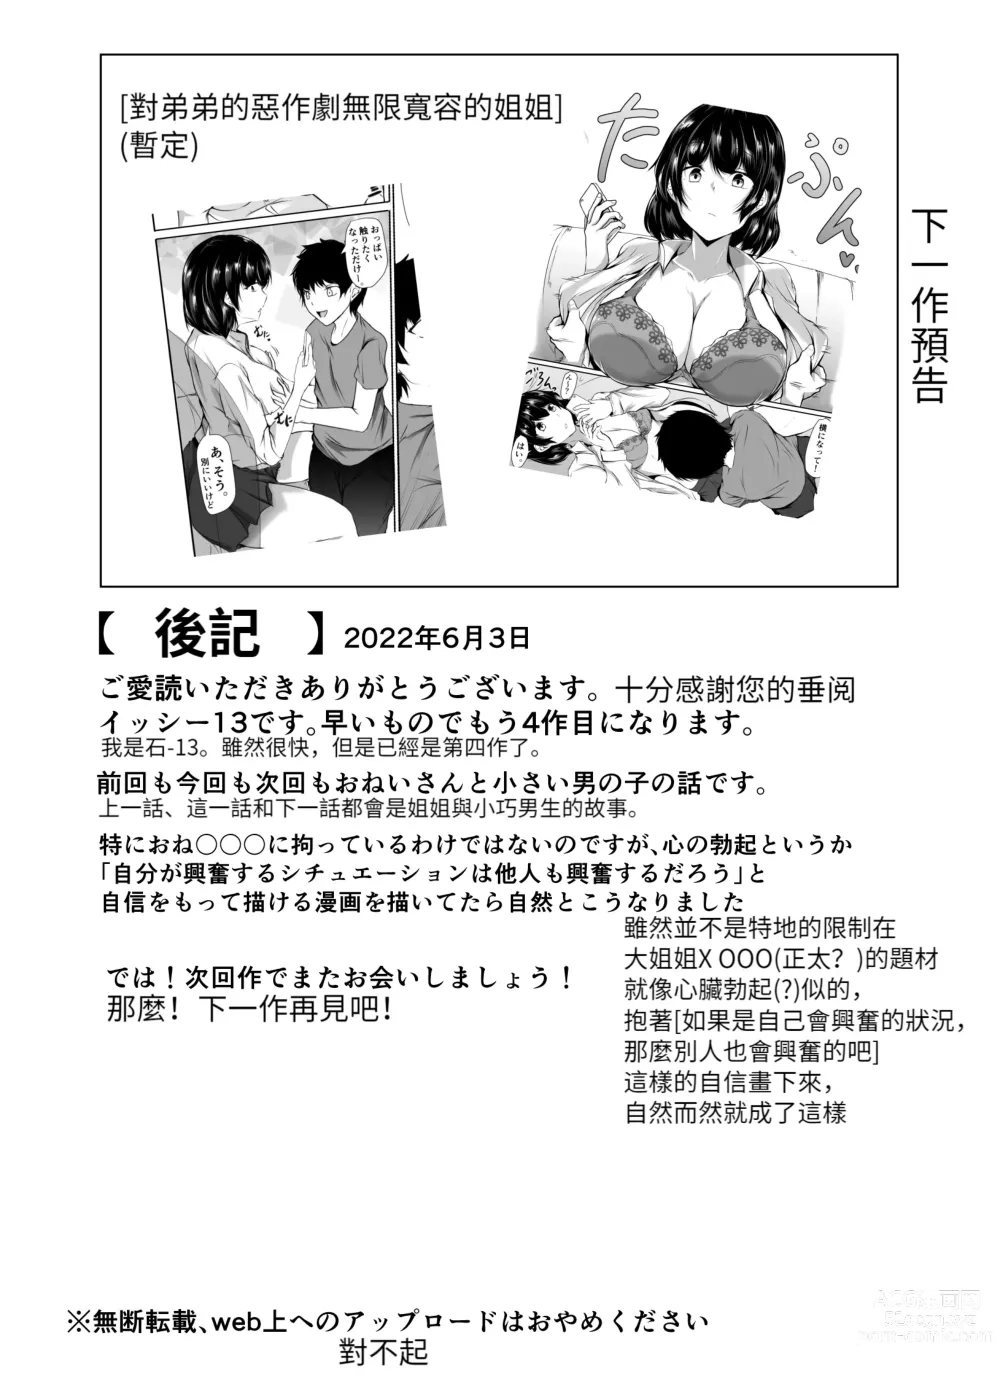 Page 53 of doujinshi Volley-bu no Ookii Kanojo to Chiisai Kareshi no Hanashi